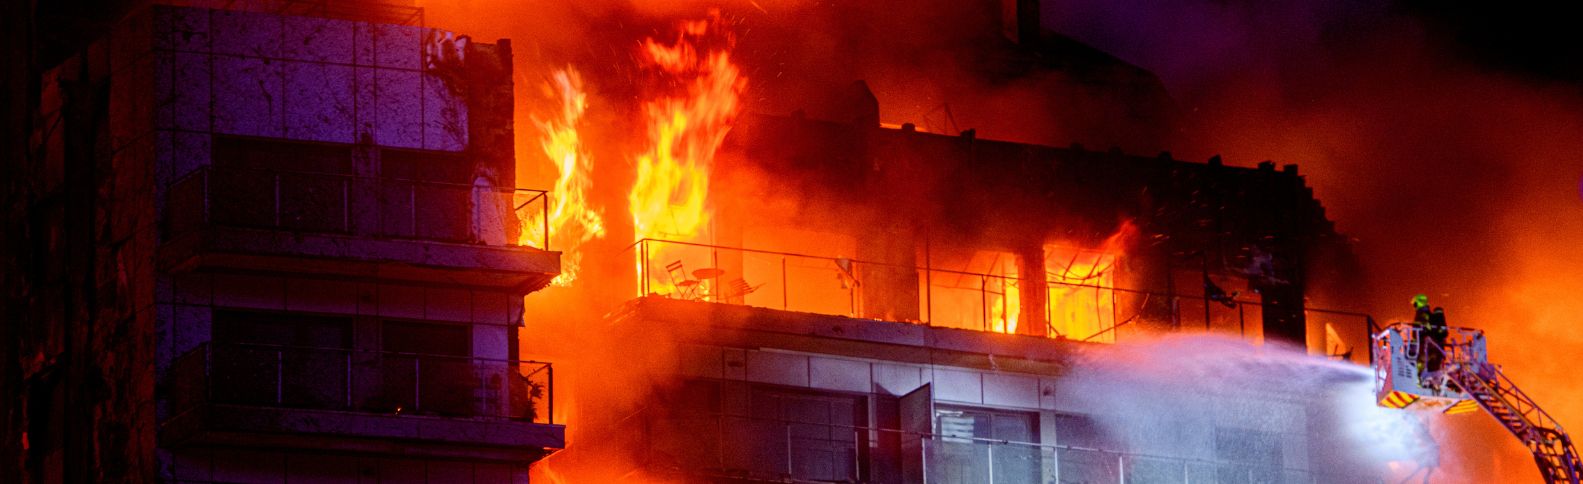 Cruz Roja activa sus Equipos de Emergencias ante el trágico incendio de un edificio en Valencia